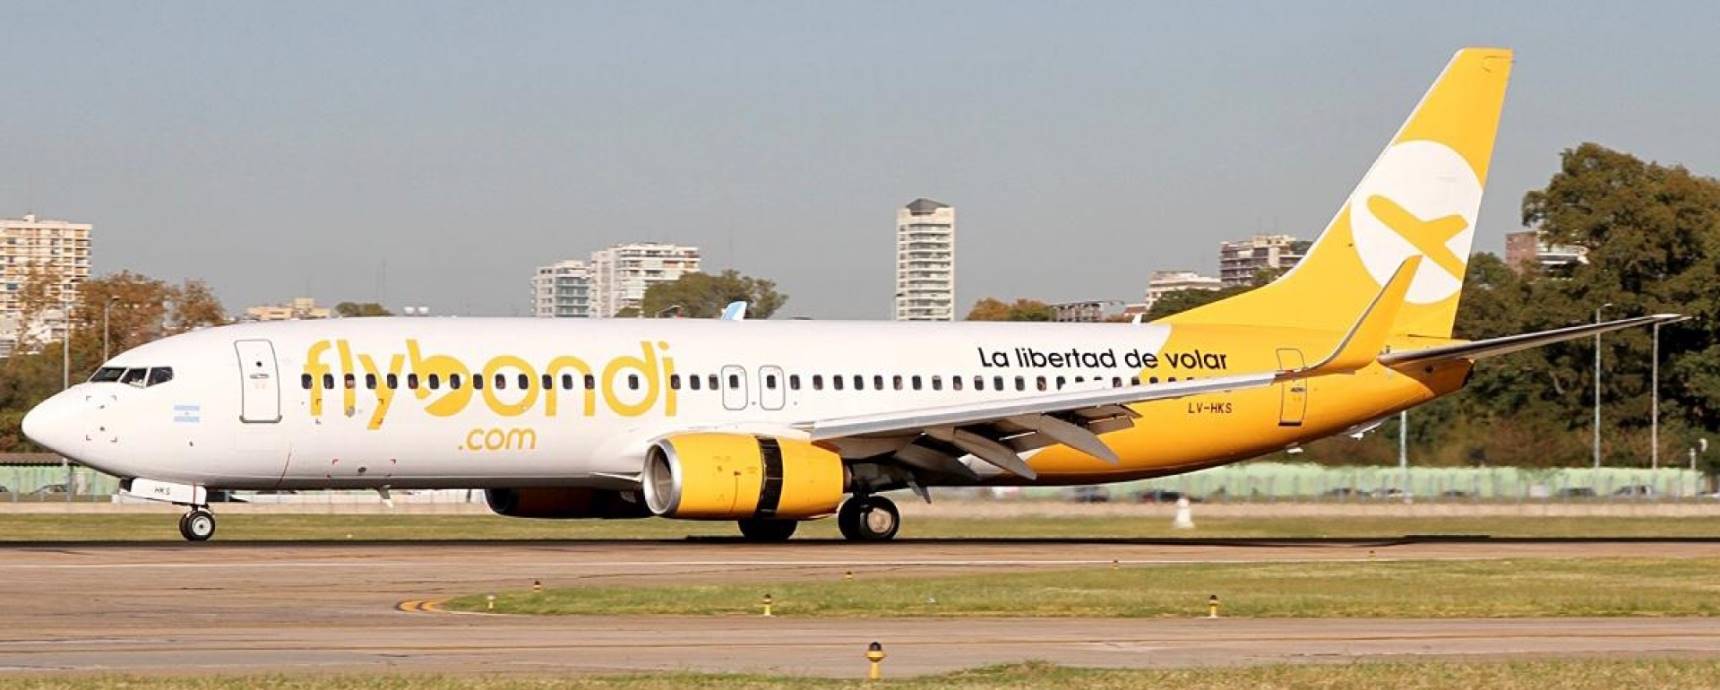 Low Cost Flybondi fliegt ab Dezember 2019 zwischen Florianópolis und Buenos Aires